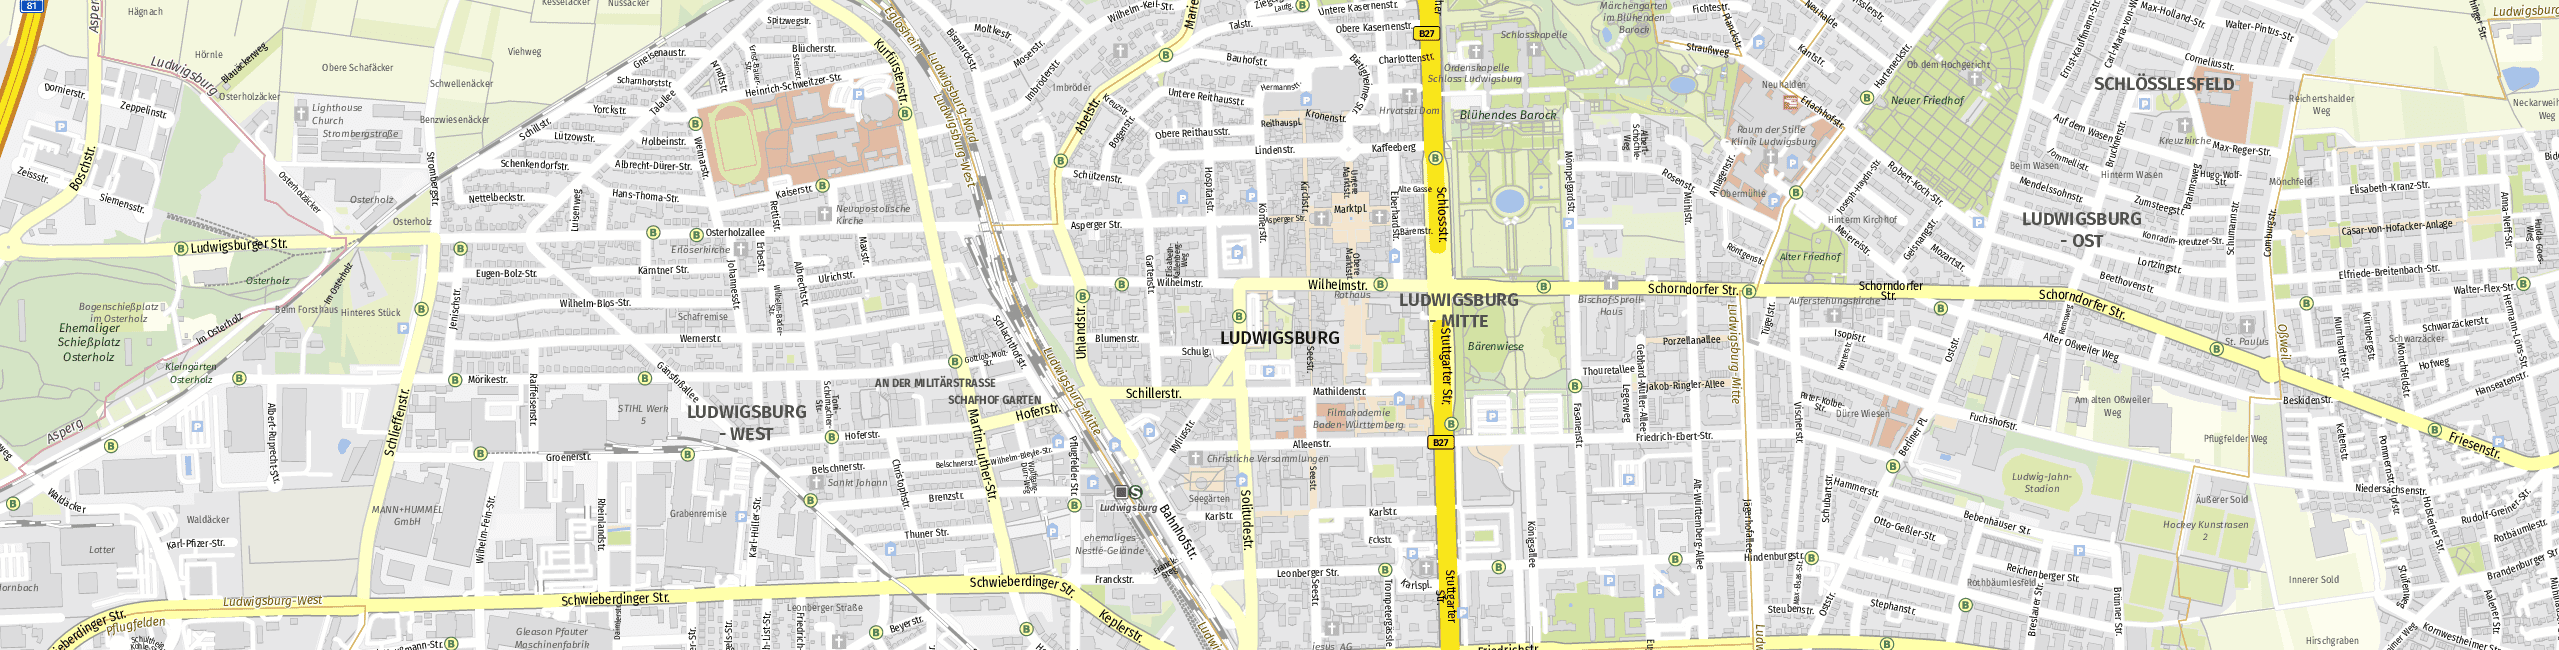 Stadtplan Ludwigsburg zum Downloaden.